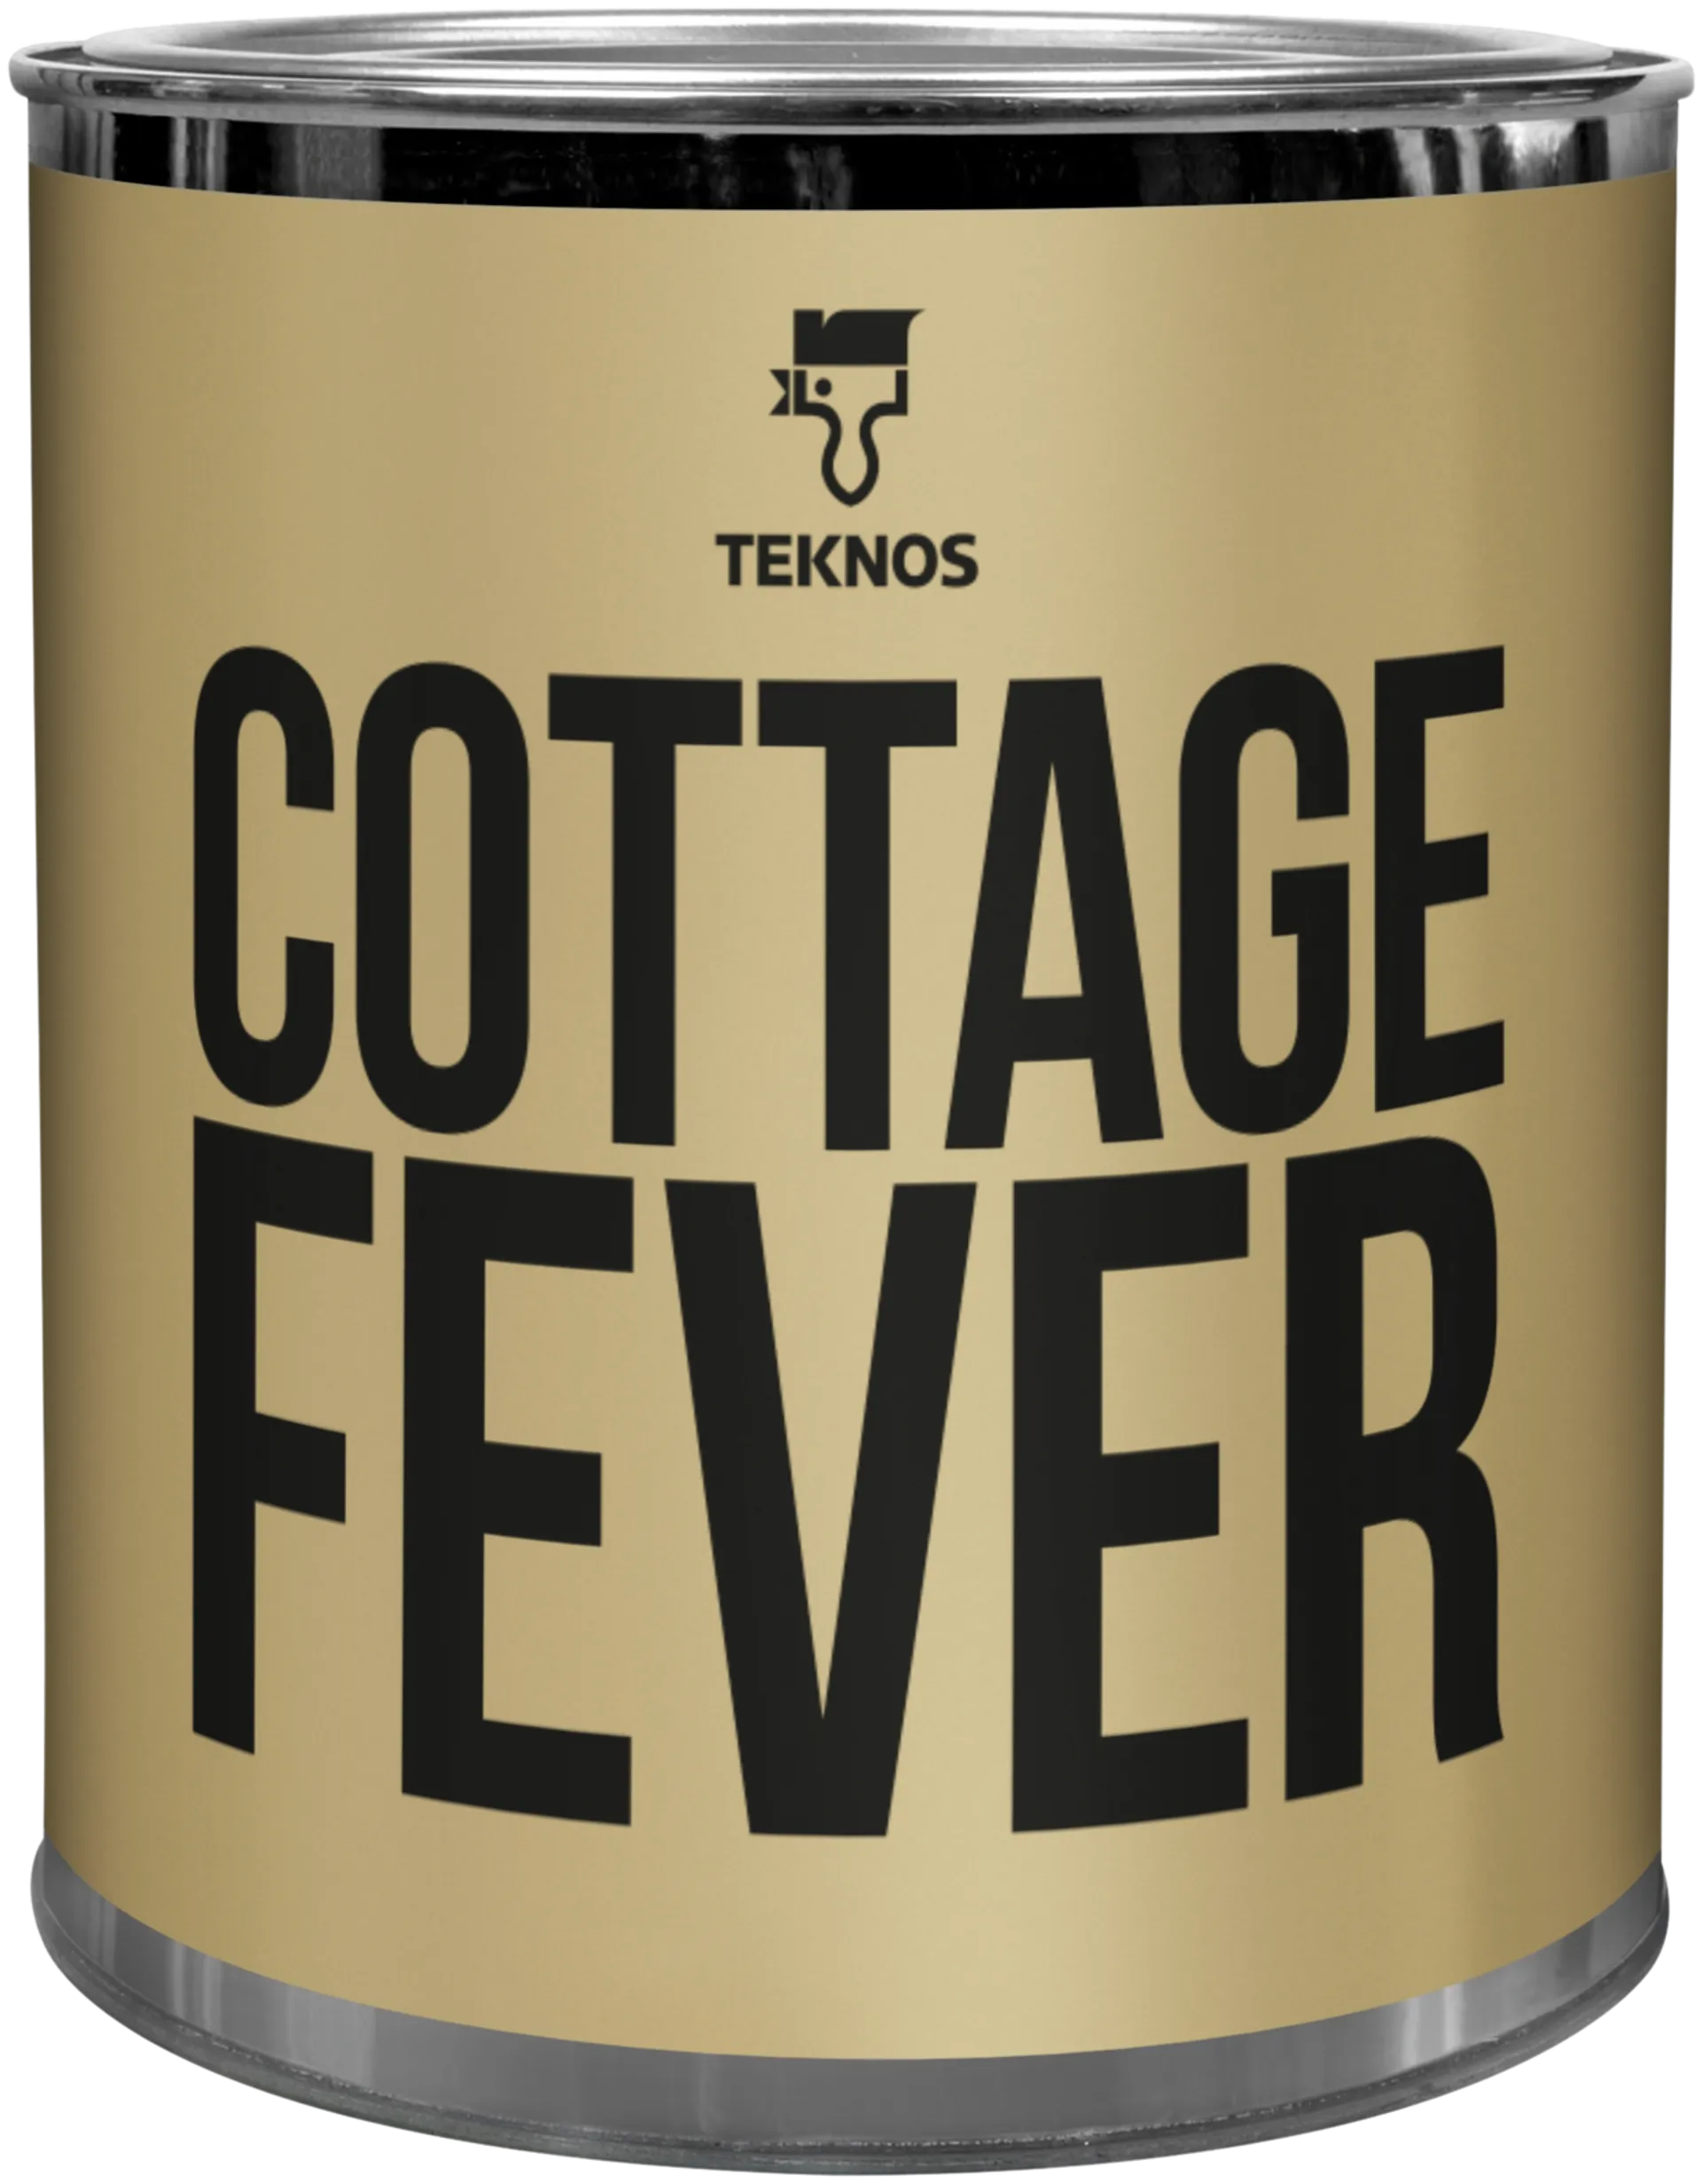 Teknos Colour sample Cottage fever T1655